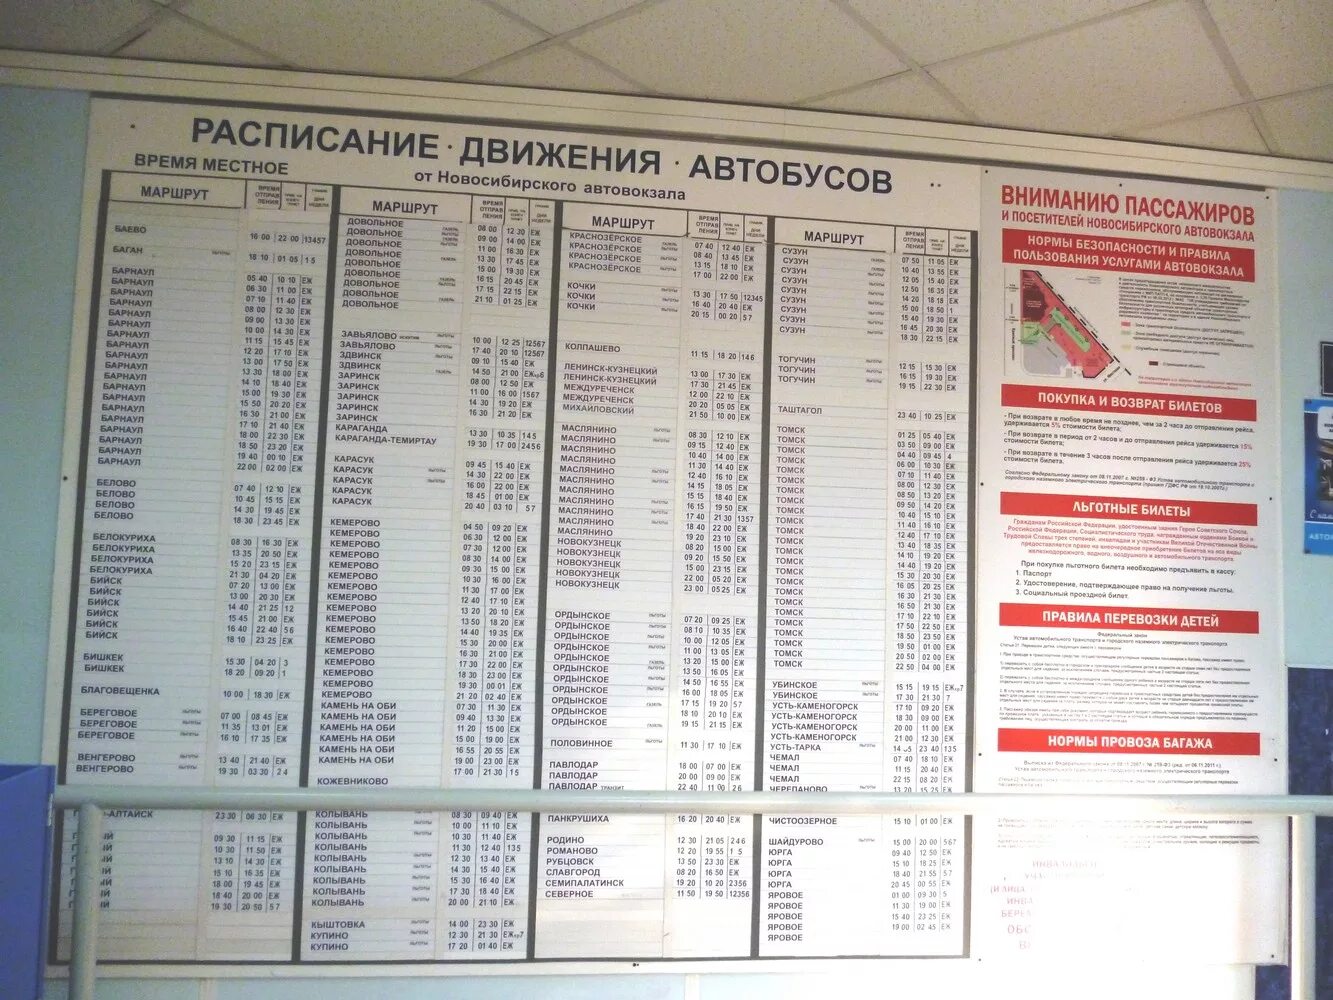 Узнать номер автовокзала. Автовокзал Новосибирск расписание. Расписание Новосибирского автовокзала автобусов. Автовокзал расписание автобусов. Расписание автобусов автовокзал но.